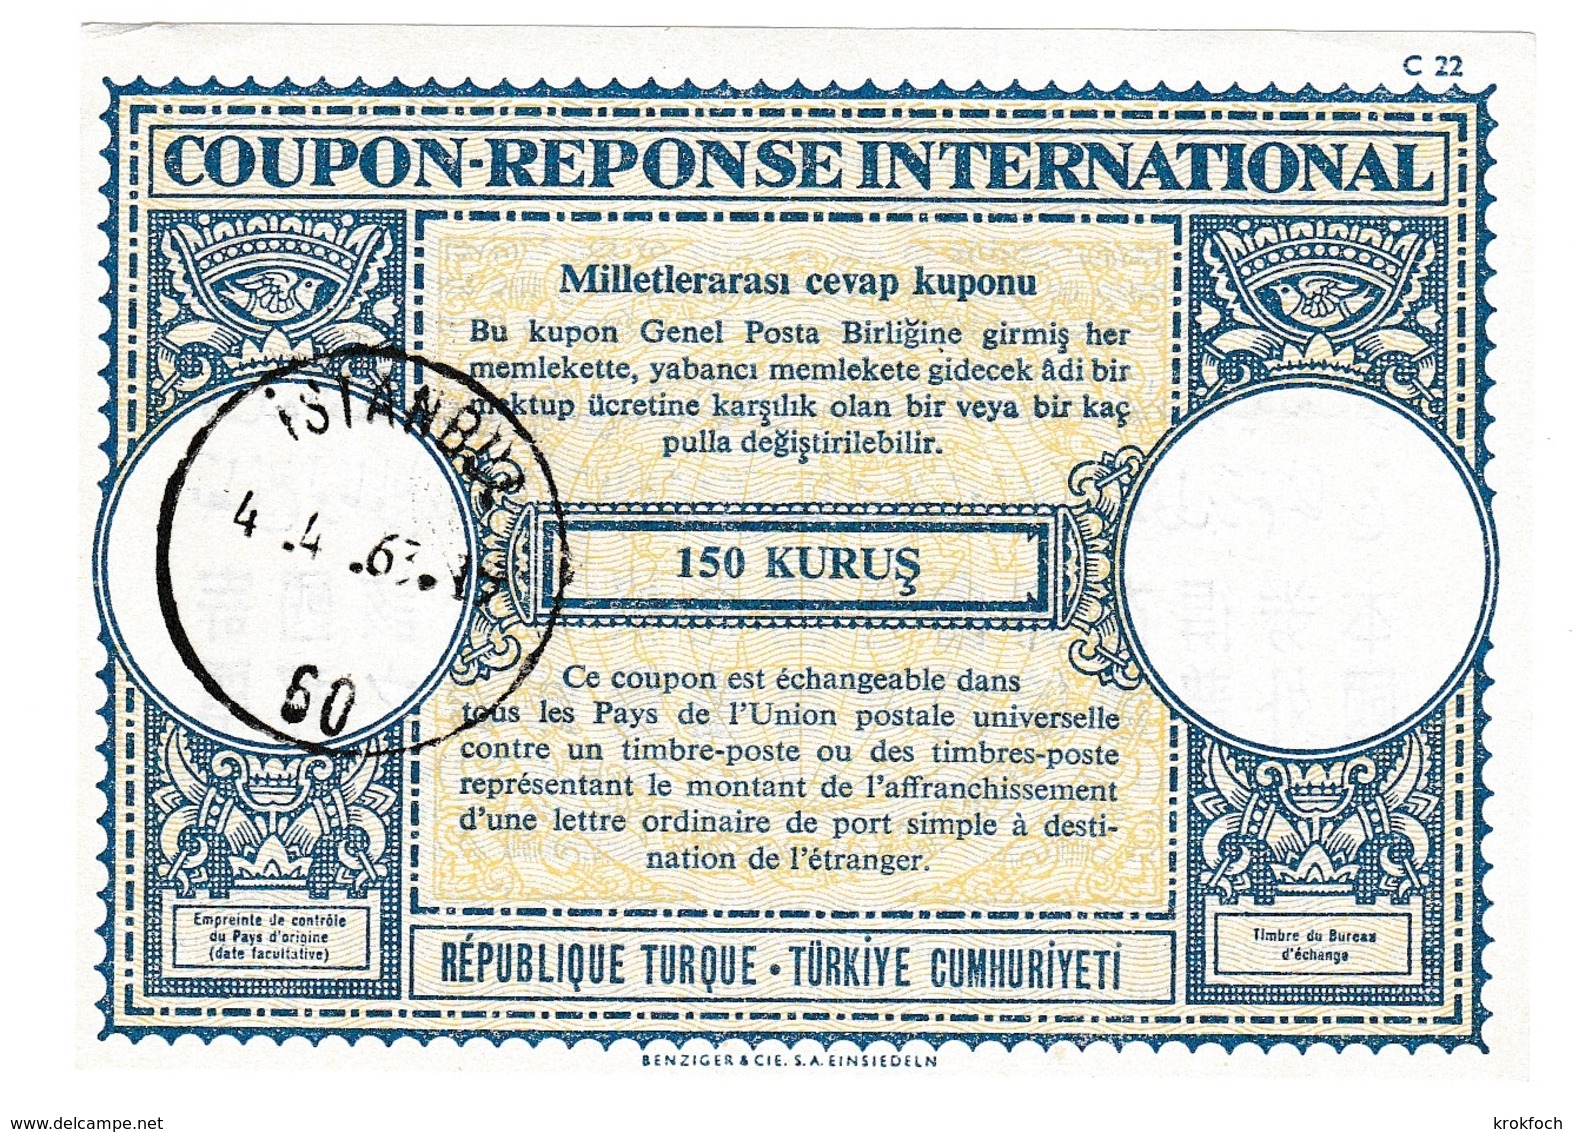 Coupon-réponse 150 Kurus - Istanbul 1963 - C 22 - Turquie Turkiye - IRC CRI IAS - Entiers Postaux